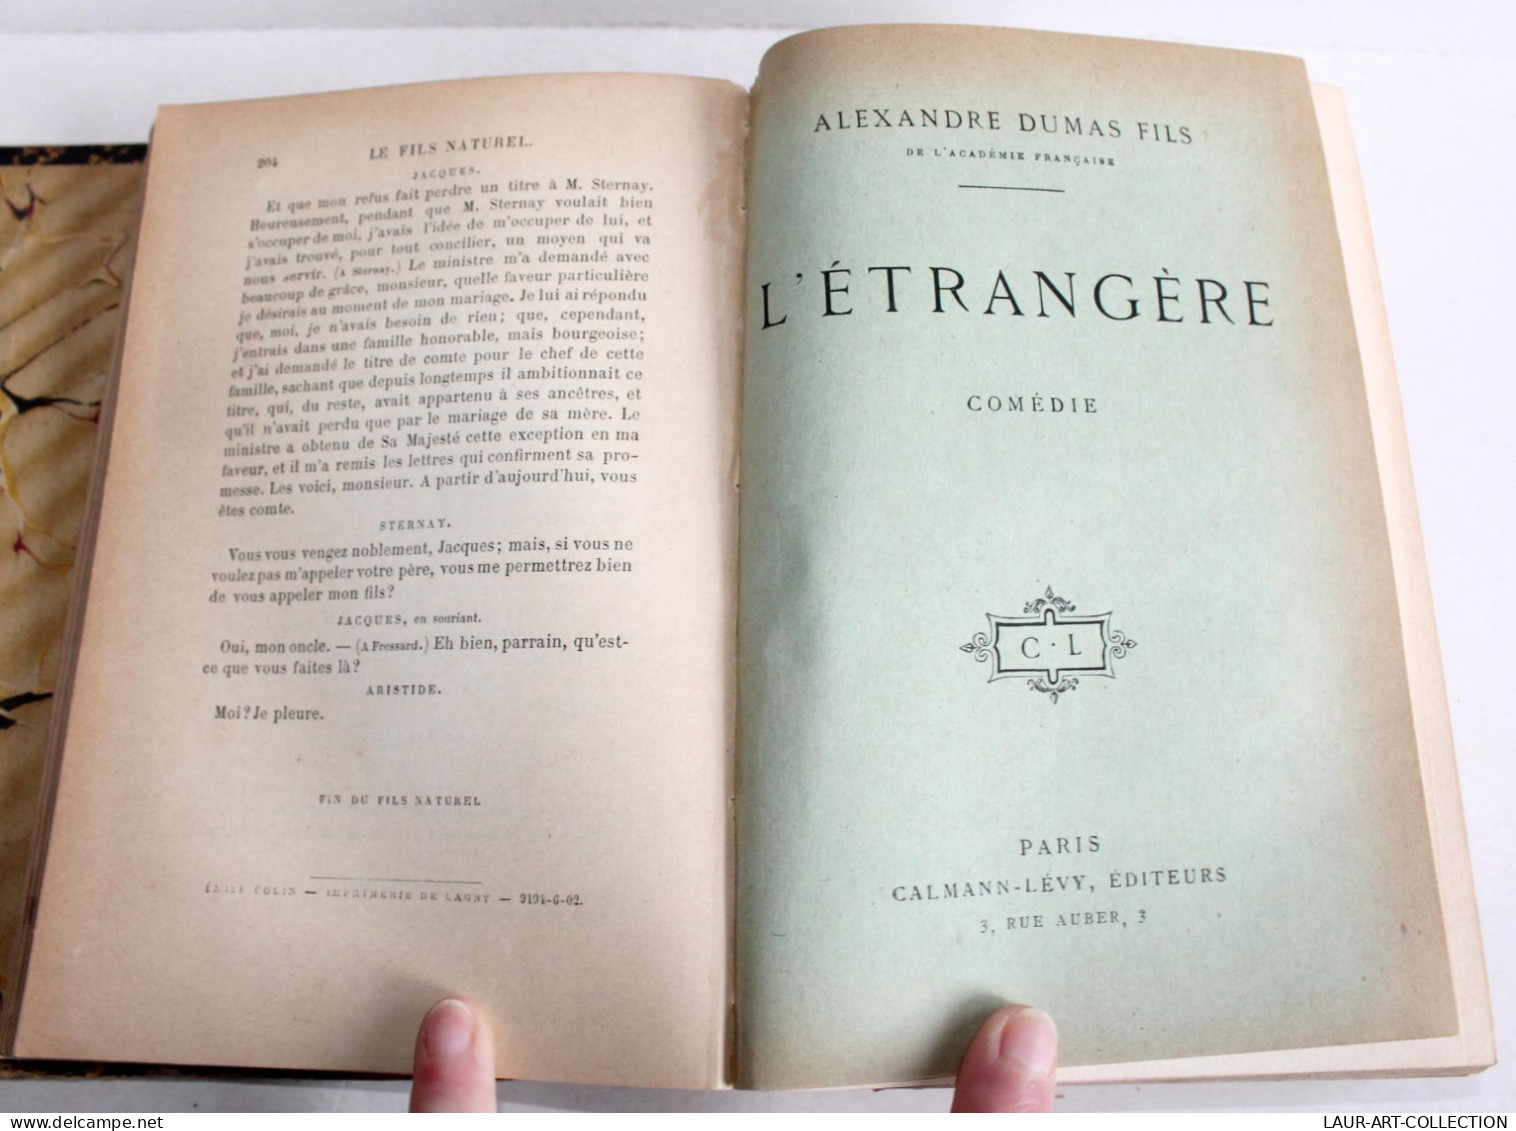 THEATRE RARE 3 COMEDIE XIXe Par DUMAS FILS NATUREL + L'ETRANGERE + PERE PRODIGUE, ANCIEN LIVRE XIXe SIECLE (1803.242) - Auteurs Français